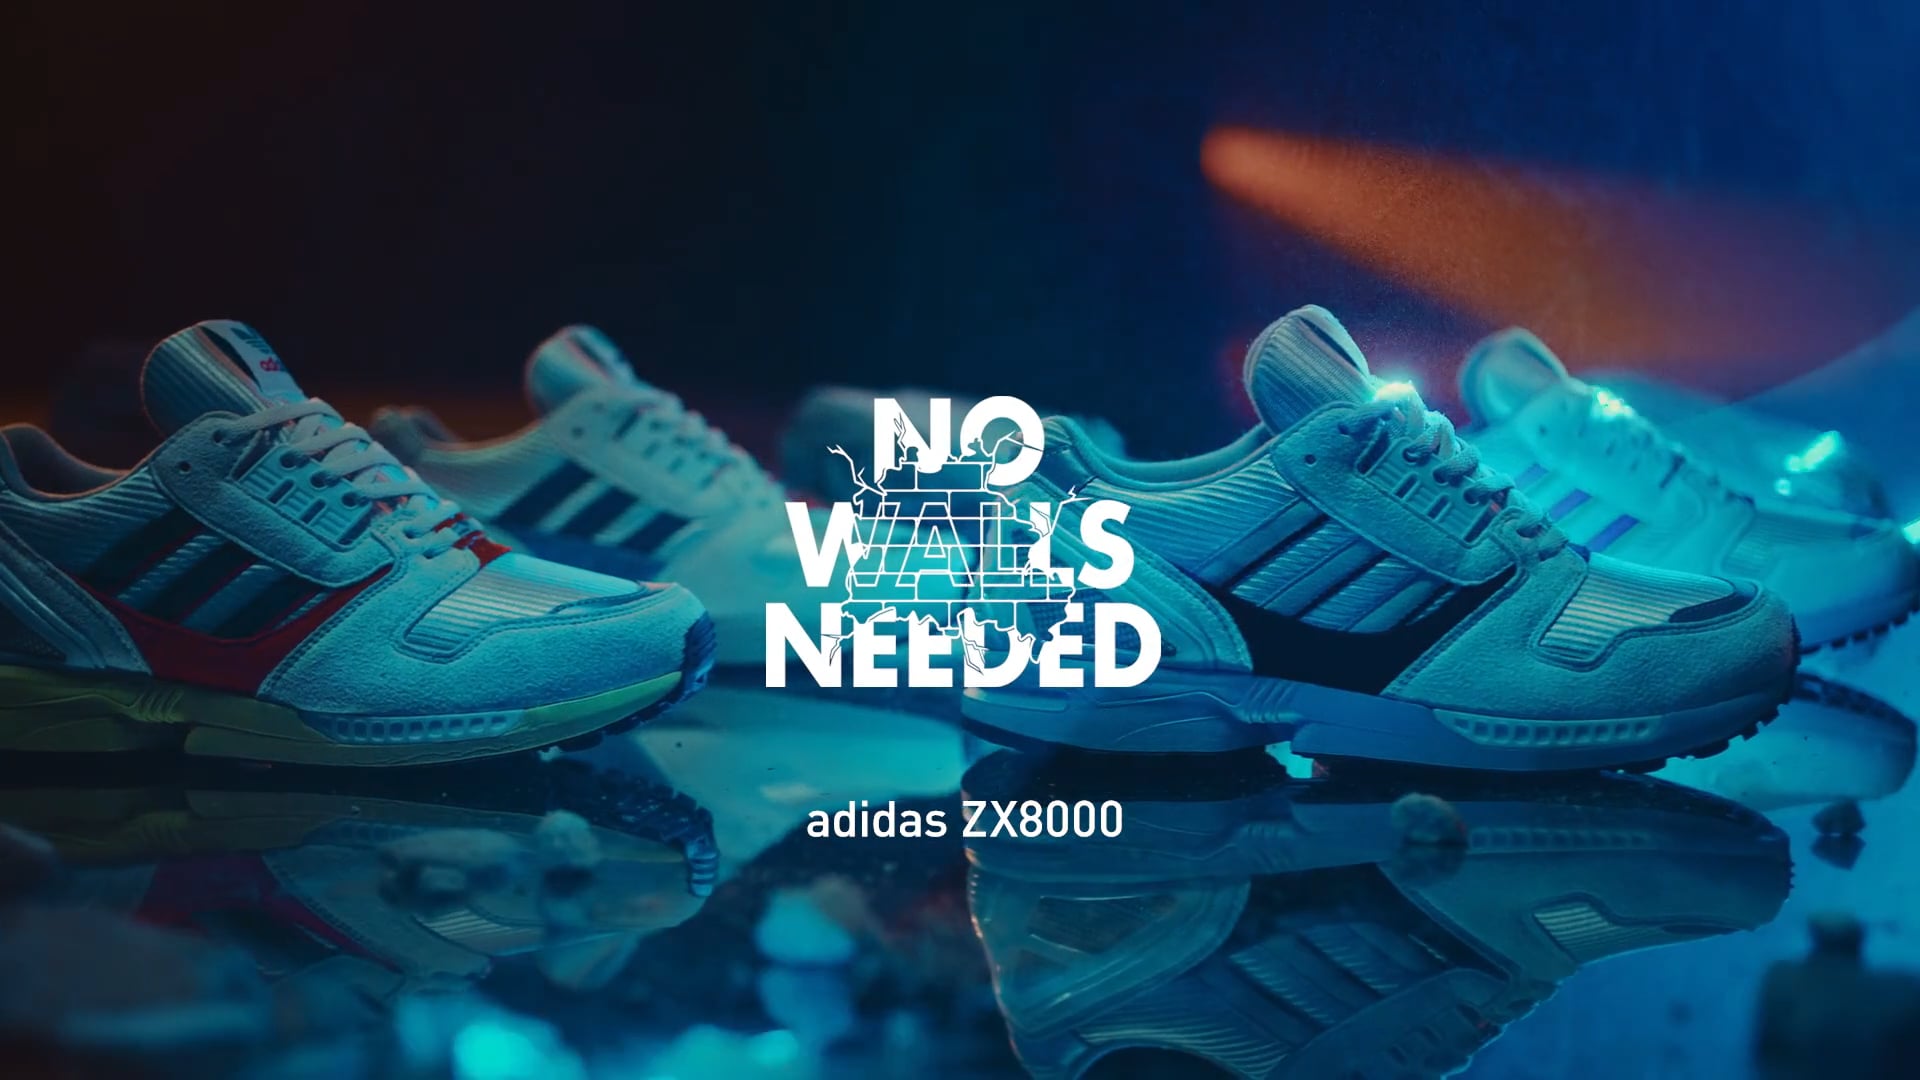 adidas ZX 8000 "No Walls Needed" x Overkill